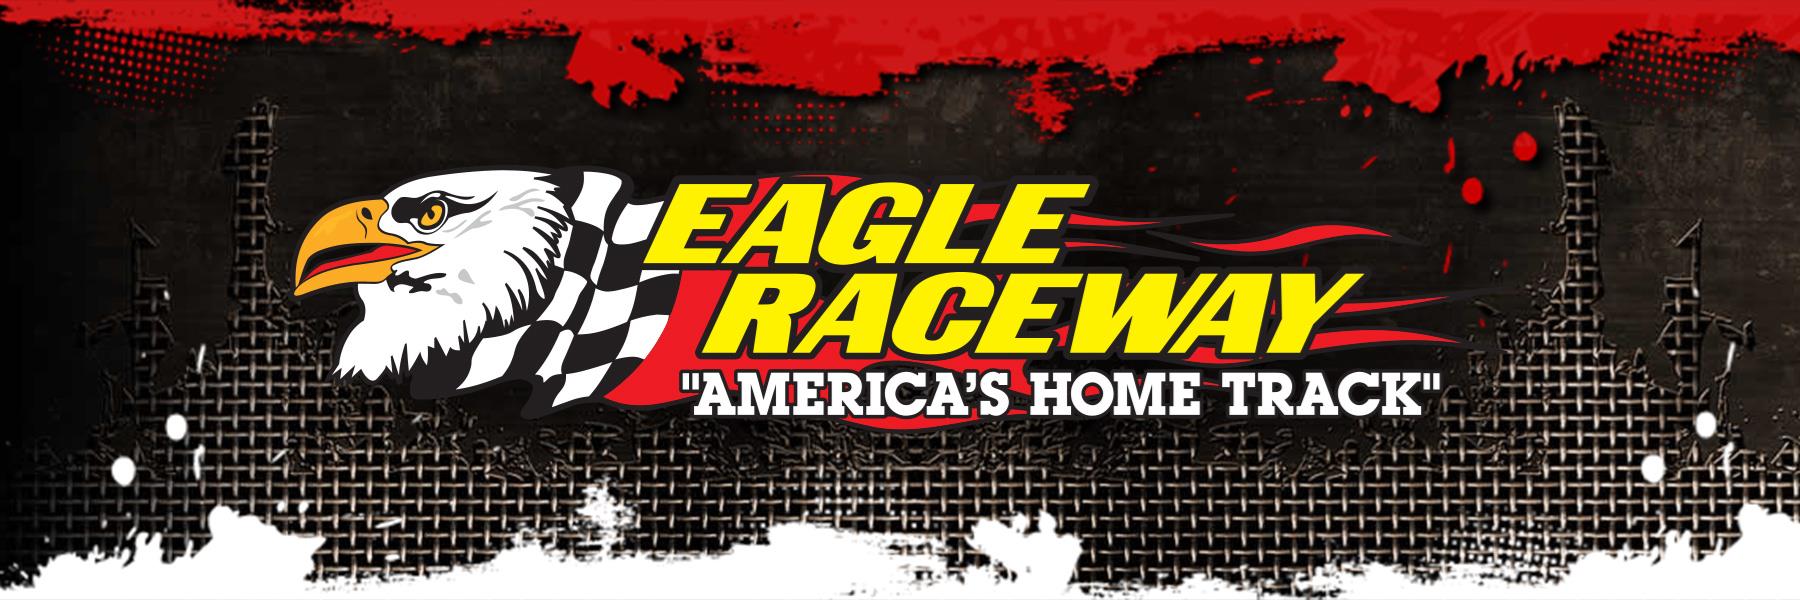 7/6/2013 - Eagle Raceway